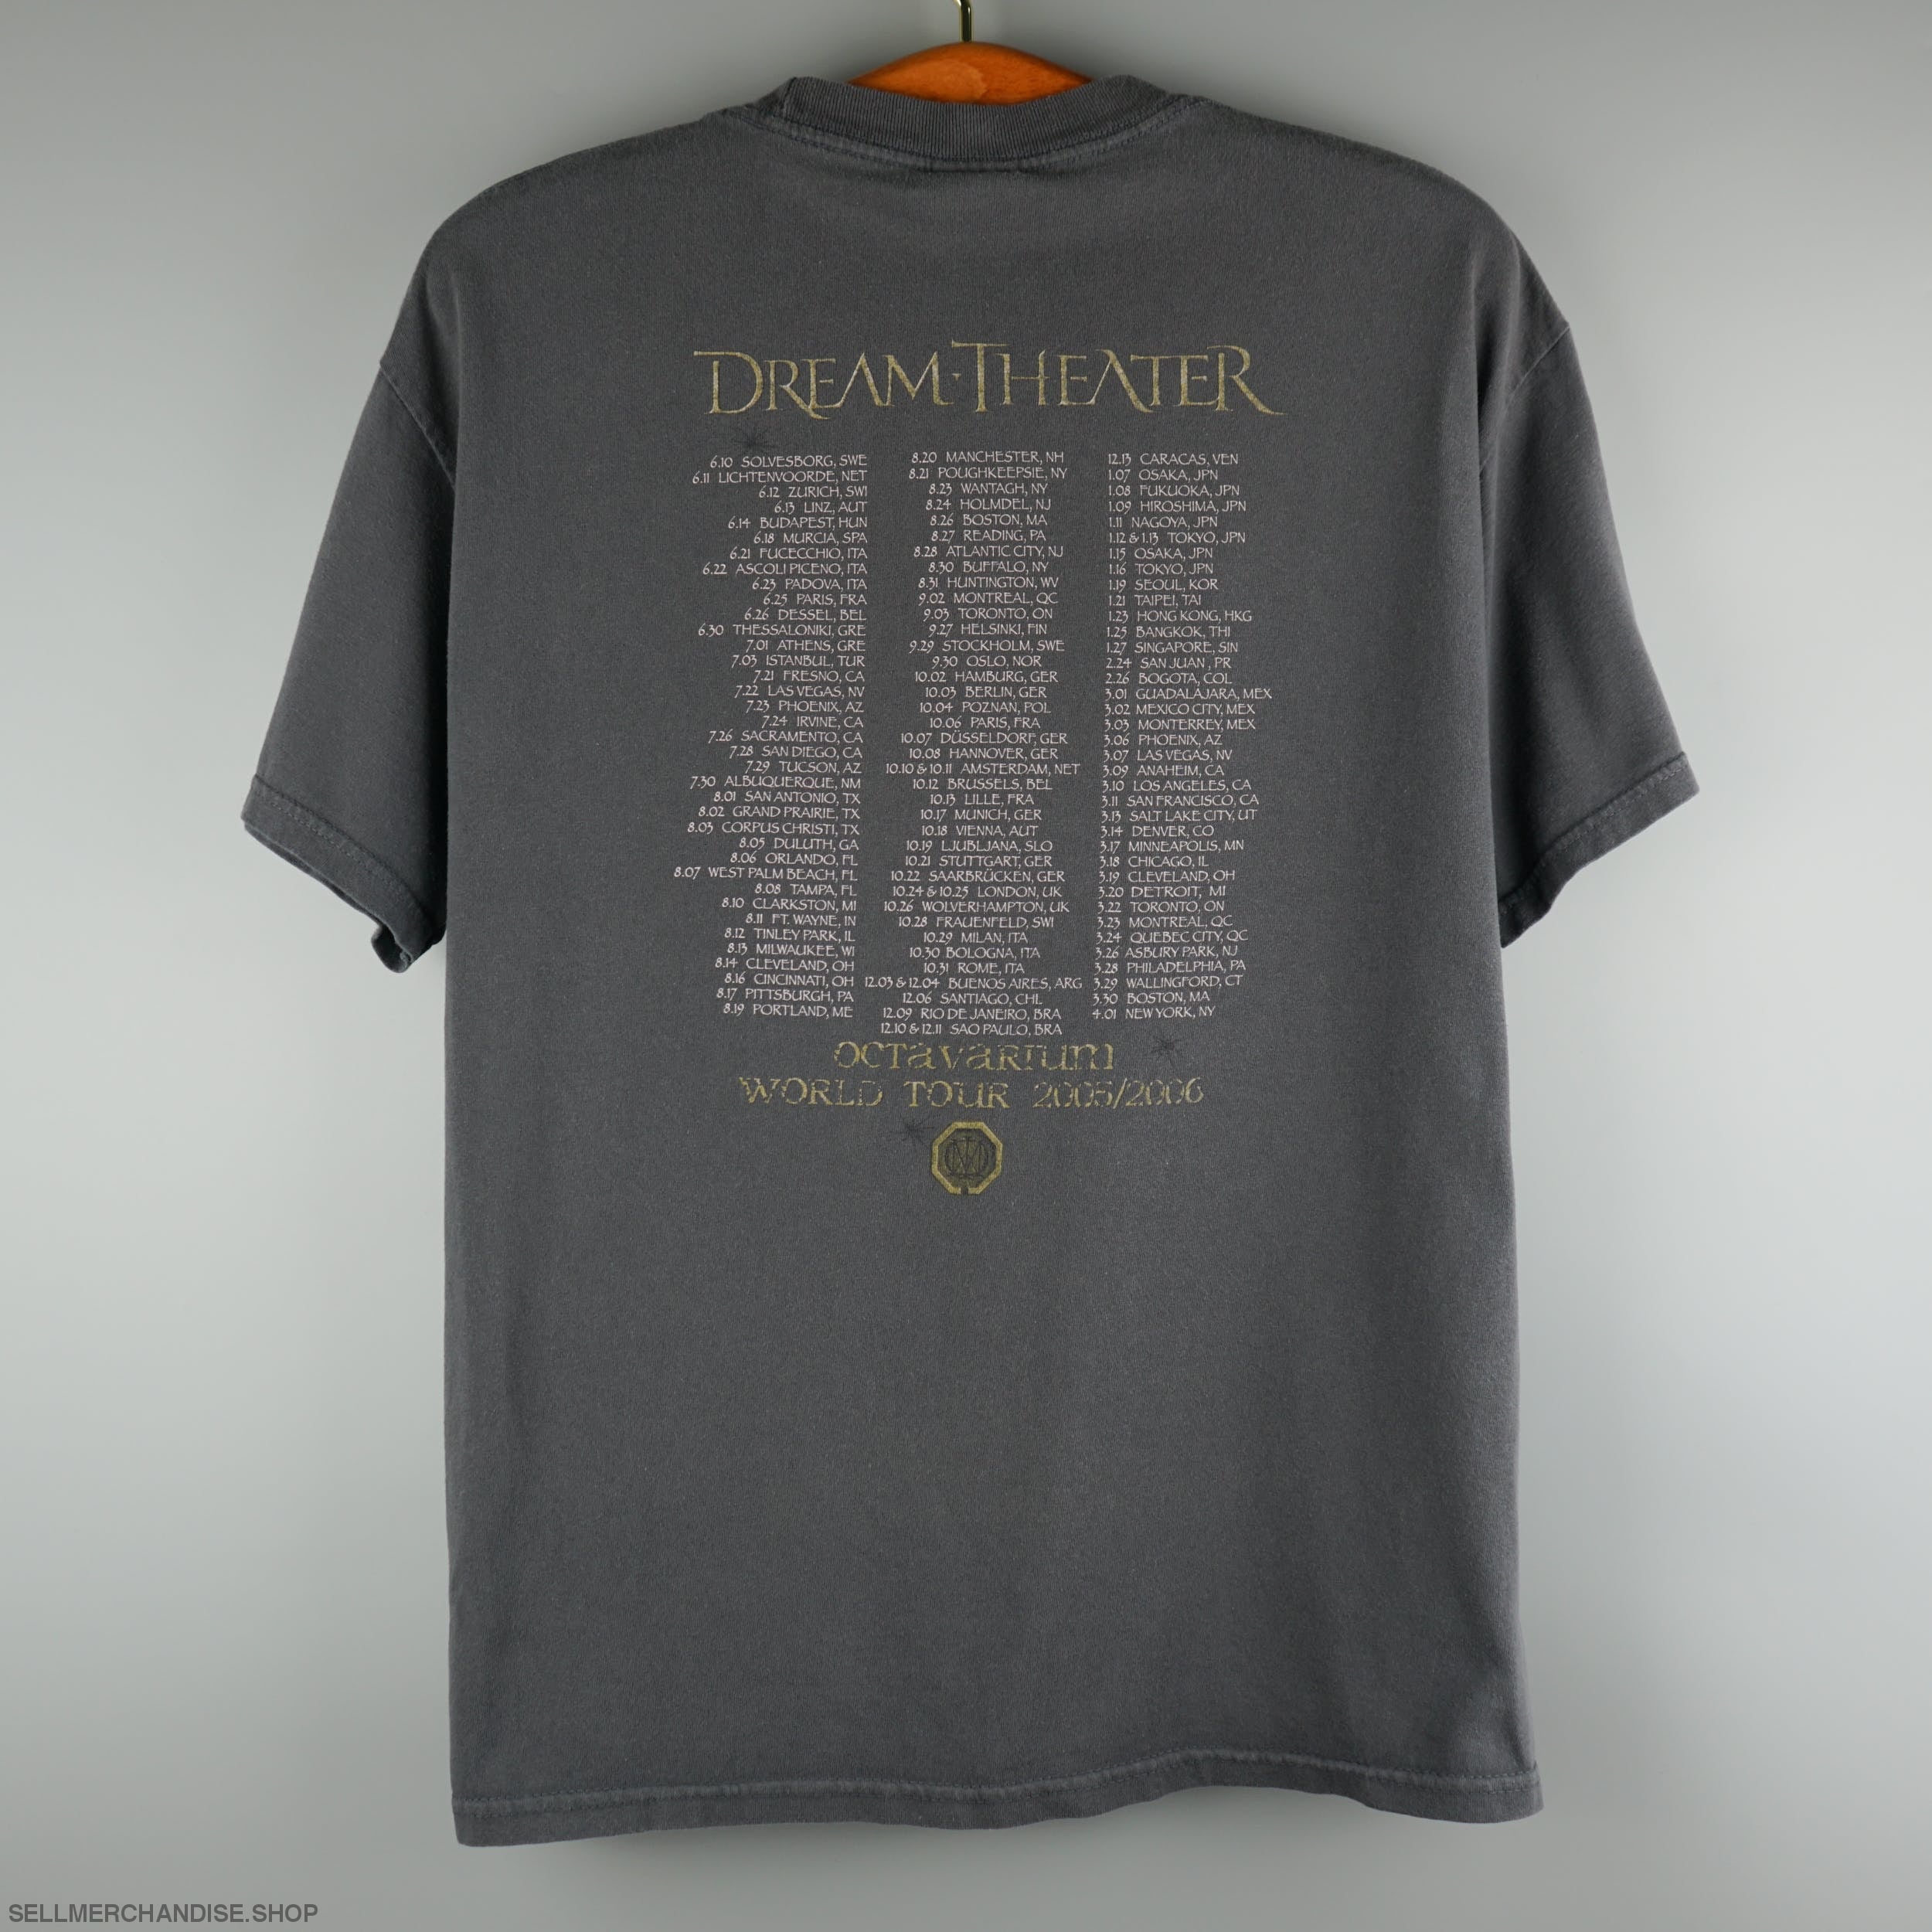 Vintage 2005 Dream Theater Tour T-Shirt